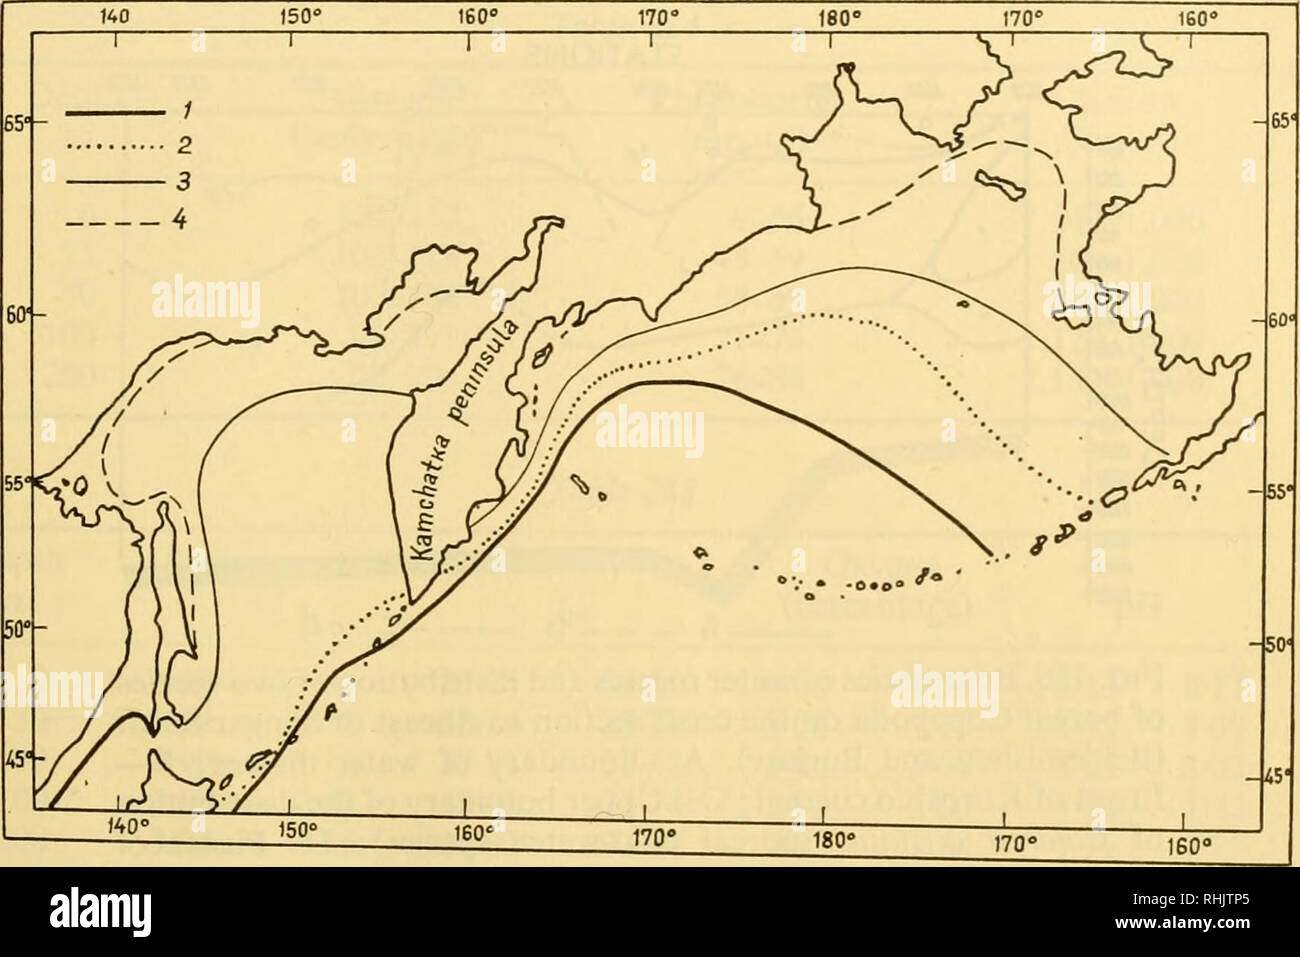 . Biologie des mers de l'URSS. Biologie Marine -- Union soviétique ; l'Hydrologie -- Union soviétique. Caractéristiques générales des mers de l'EXTRÊME-ORIENT 697 il y a de la glace dans la partie nord de la Détroit de Tartarie. La glace est menée sur l'océan par le détroit de Kouriles et Kamtchatka le long de la côte. De grandes zones de la mer de Béring et d'Okhotsk sont couvertes de glace pendant près de huit mois. Comme pour les autres mers de la U.S.s.R., ce phénomène ne se retrouve que dans ceux de la côte sibérienne. La salinité de la mer de l'Extrême-Orient (à part sur leur littoral et dans l'embouchure des rivières) n'est pas exh Banque D'Images